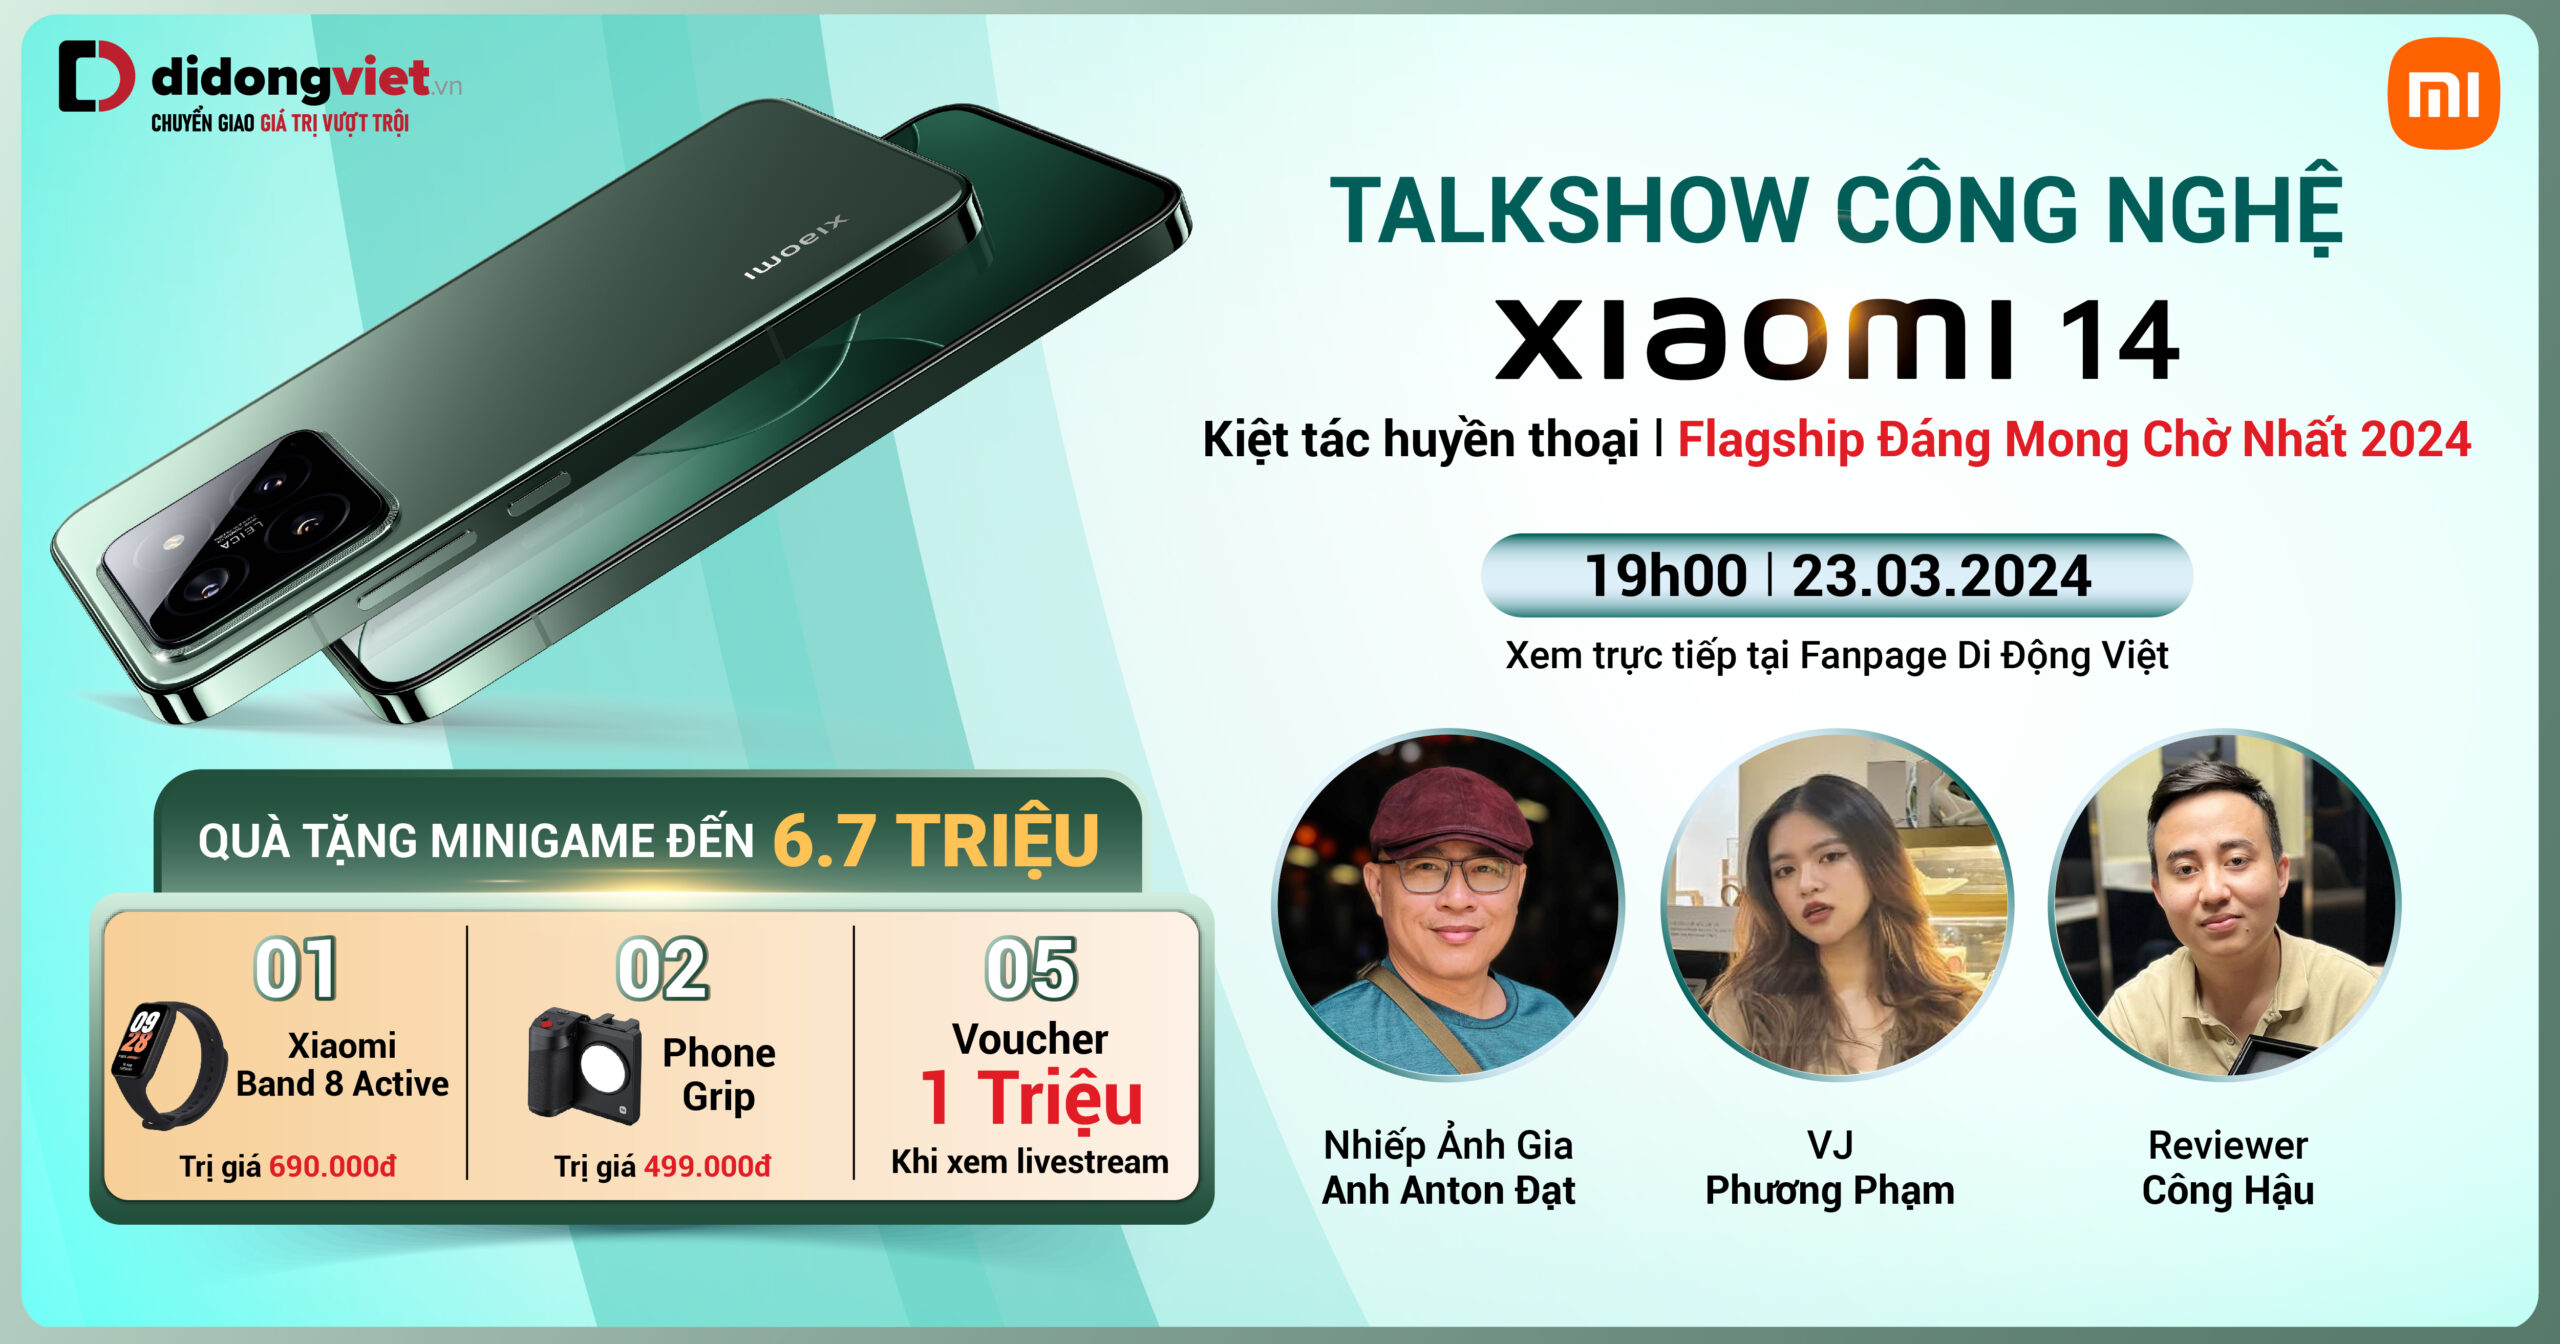 Talkshow công nghệ: Duy nhất 23.03 tại Fanpage Di Động Việt: Mở bán Xiaomi 14 – Flagship đáng mong chờ nhất 2024. Nhận quà tặng ưu đãi đến 6.7 triệu. Xem ngay.